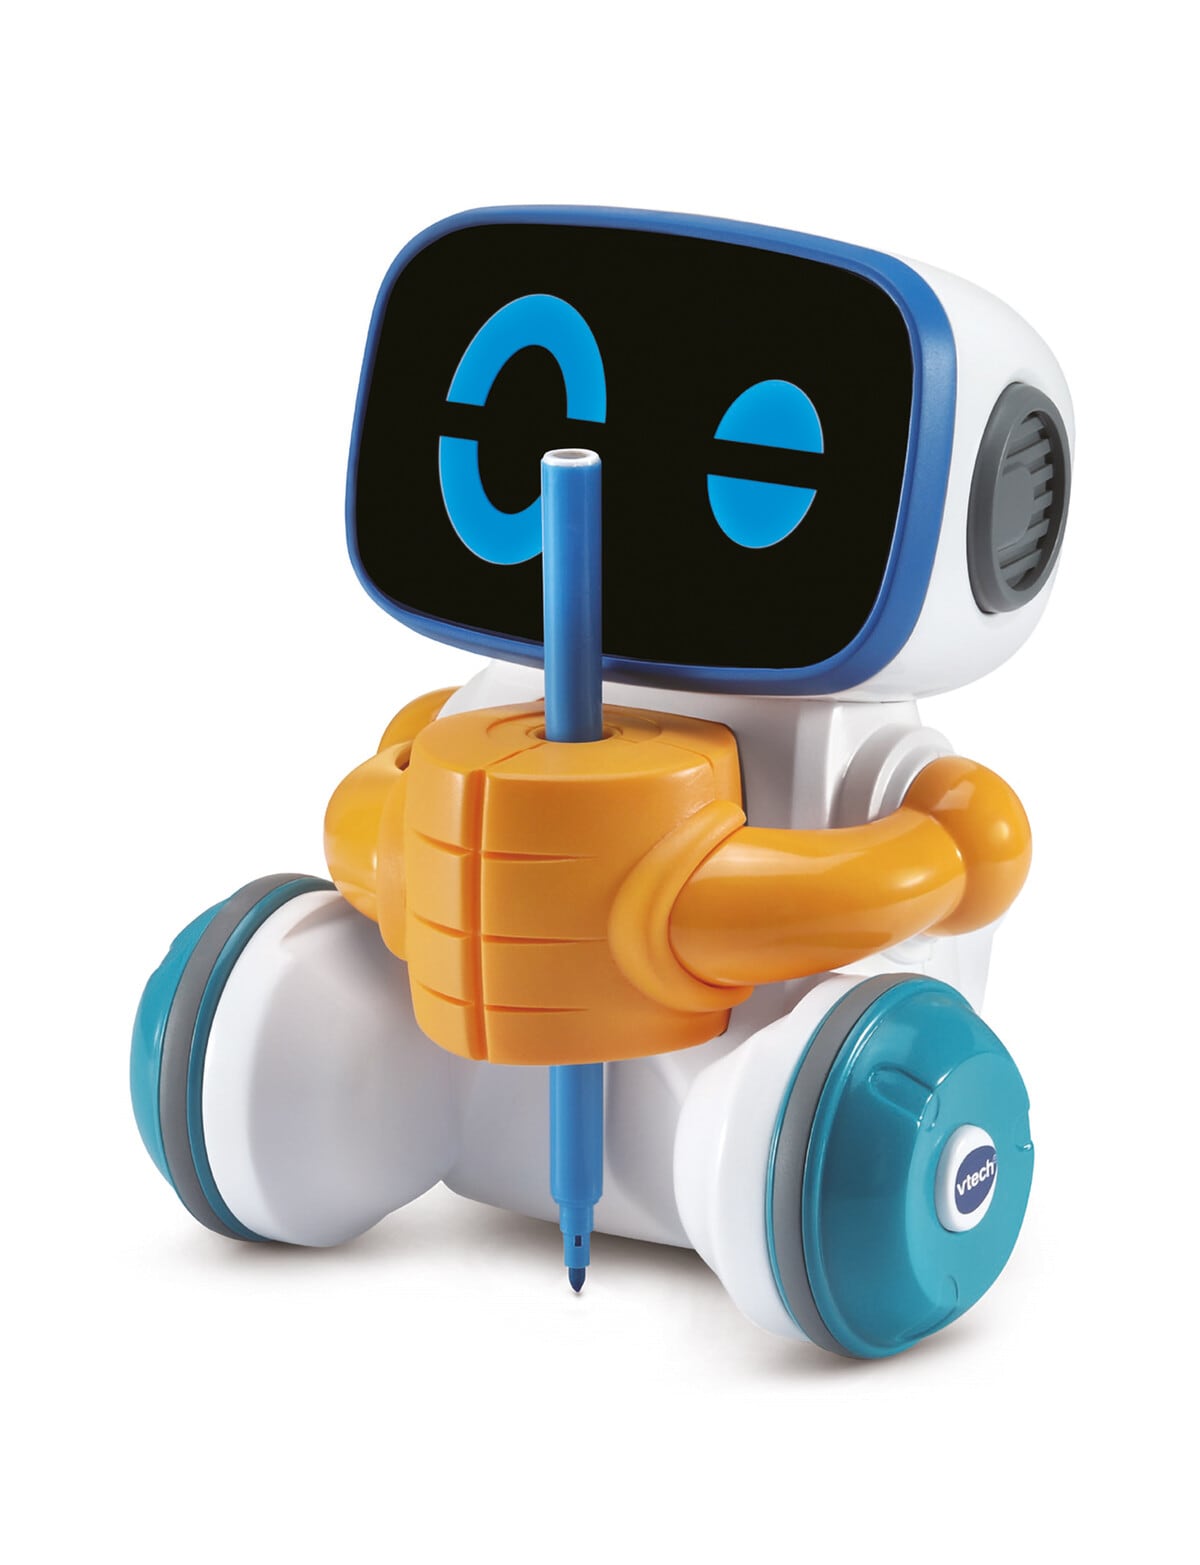  VTech JotBot Drawing & Coding Robot, Kids Learning STEM Toy